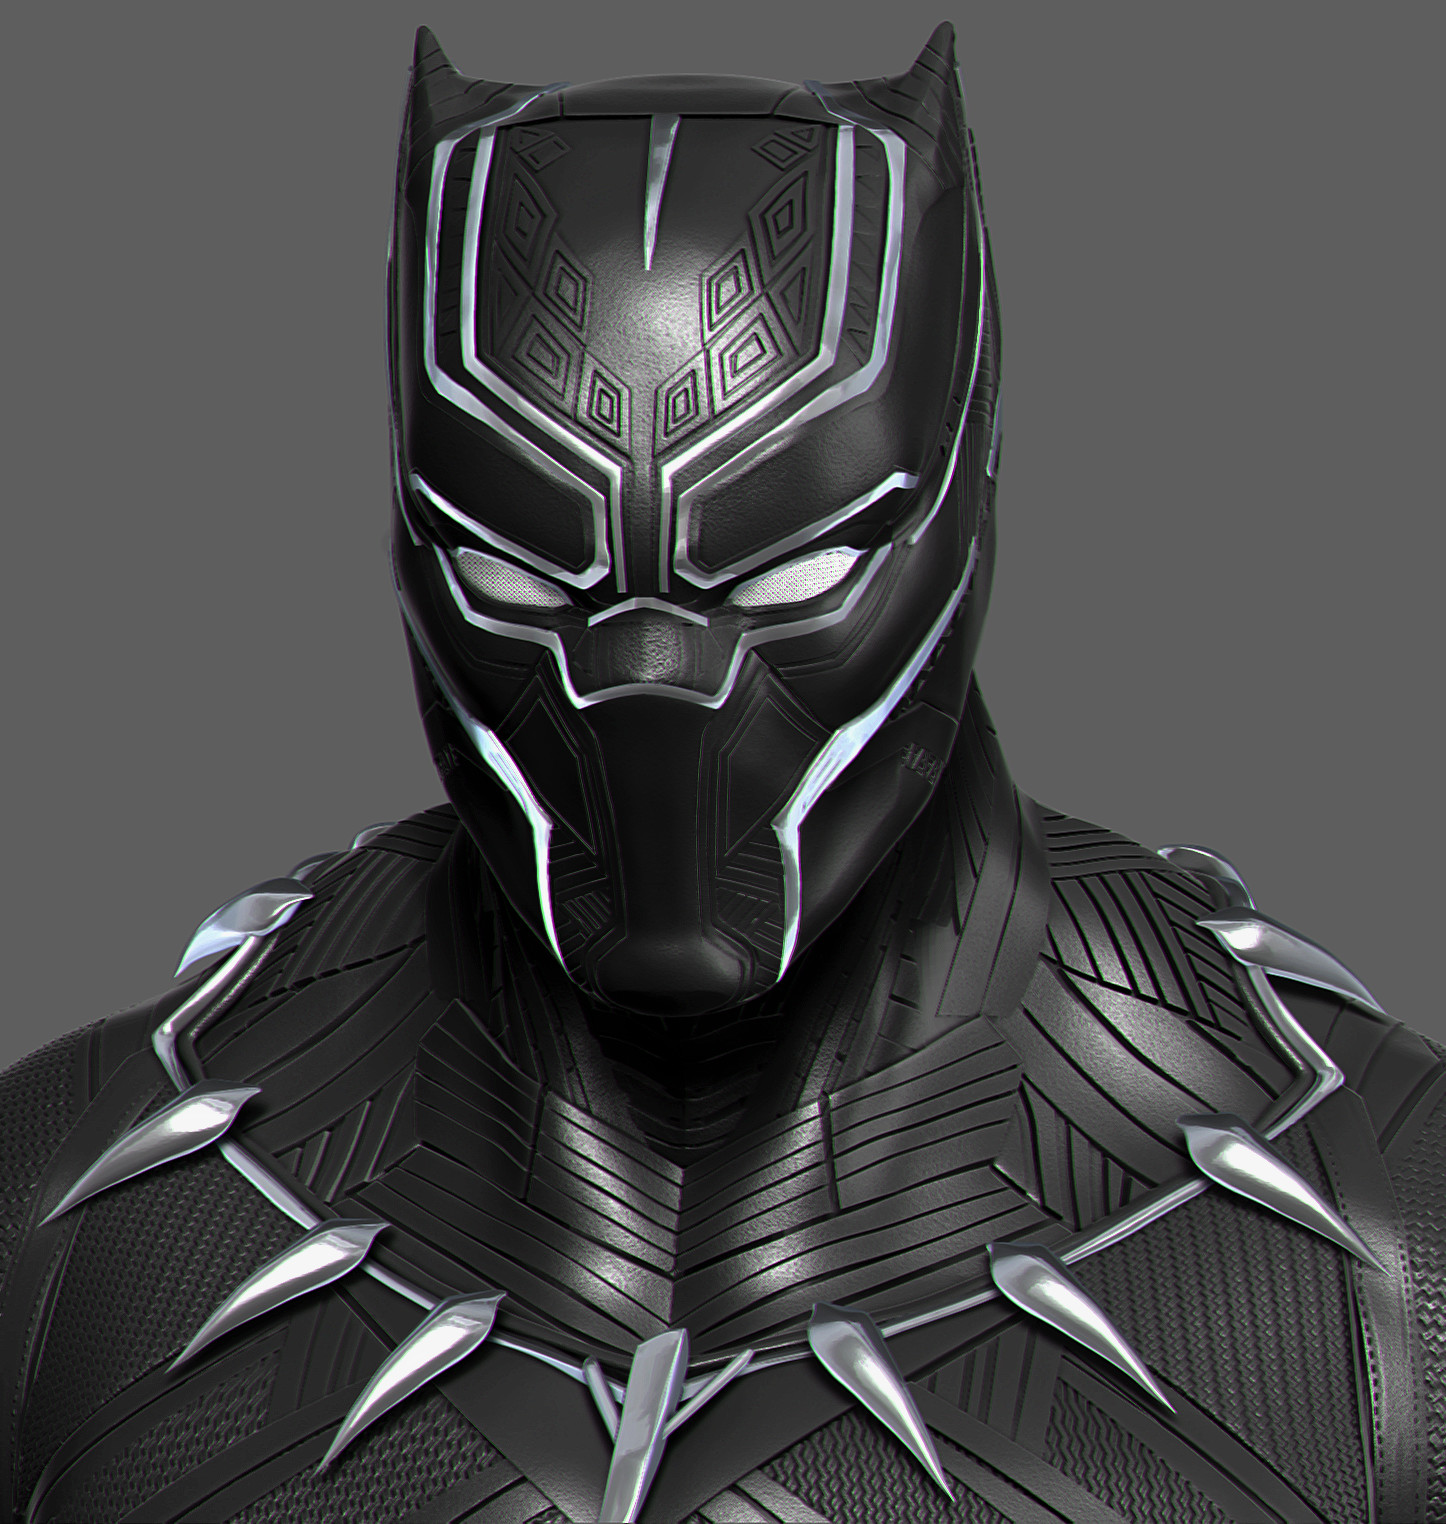 Black panther (civil war suit)